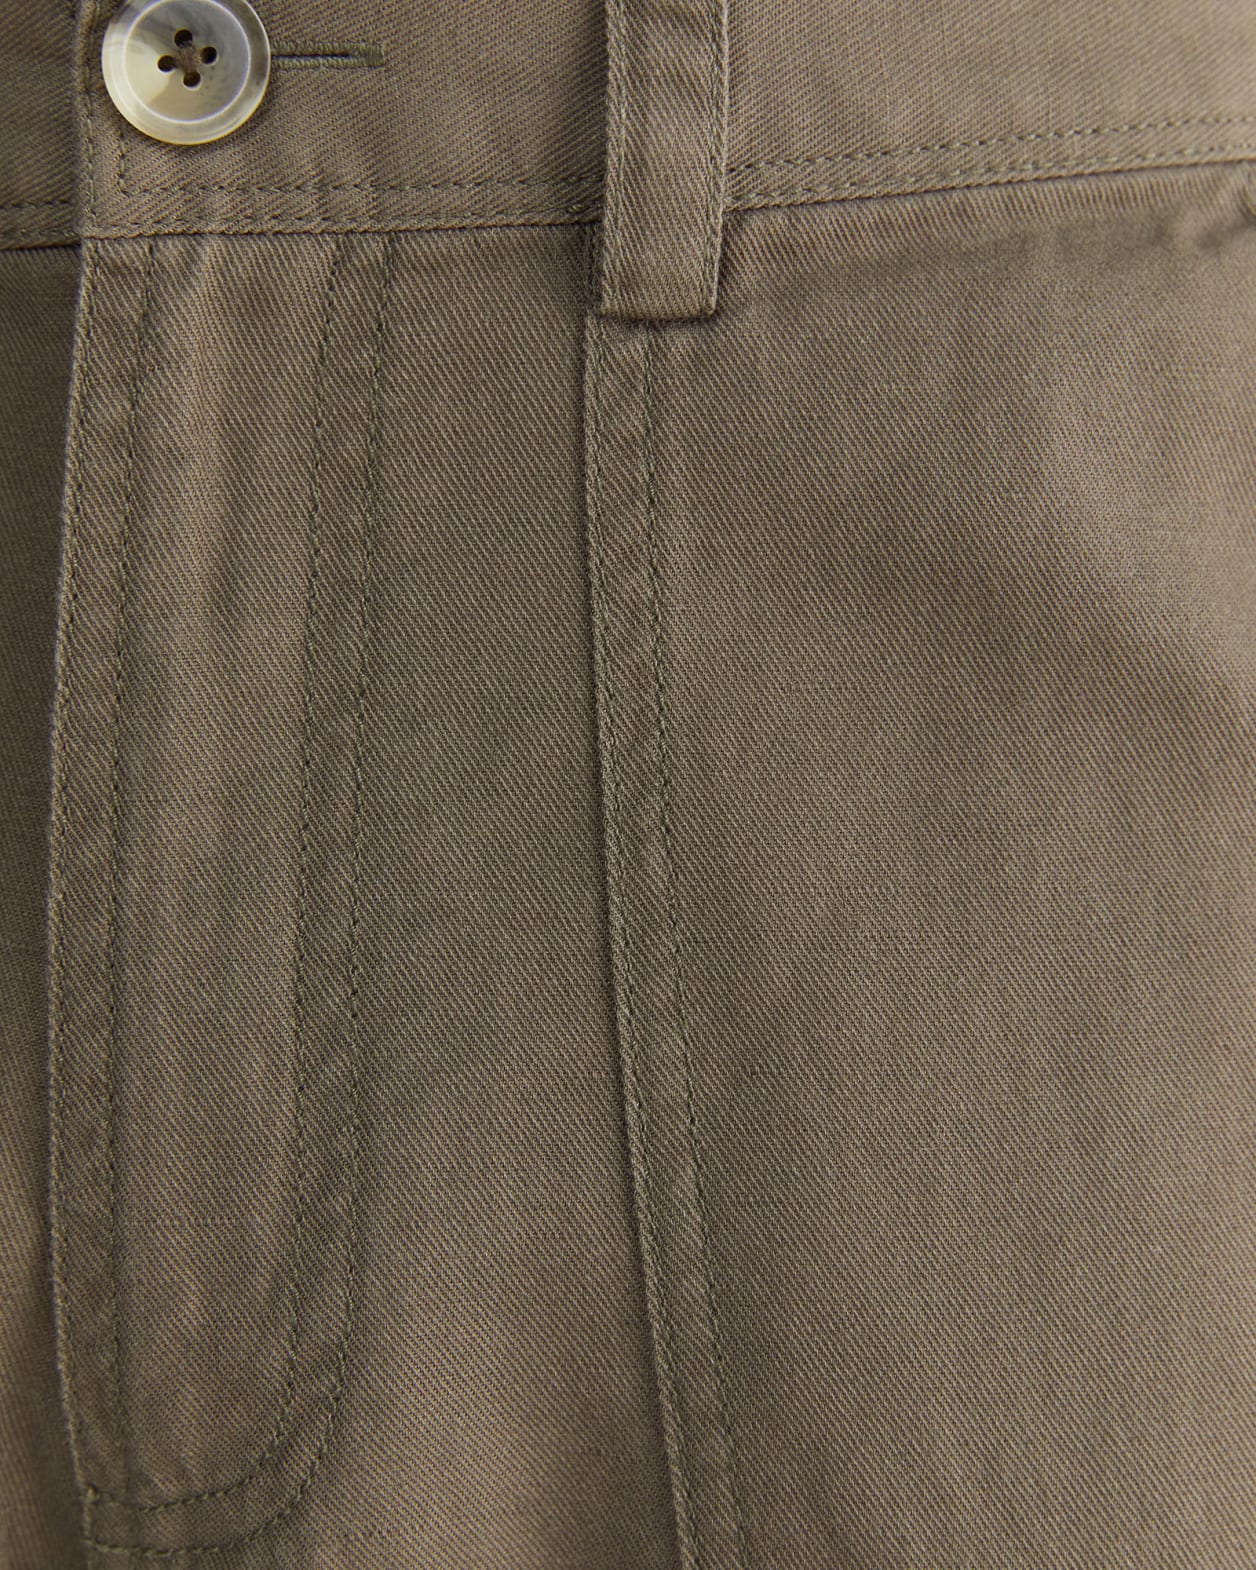 Cotton Linen Workroom Pants in KHAKI